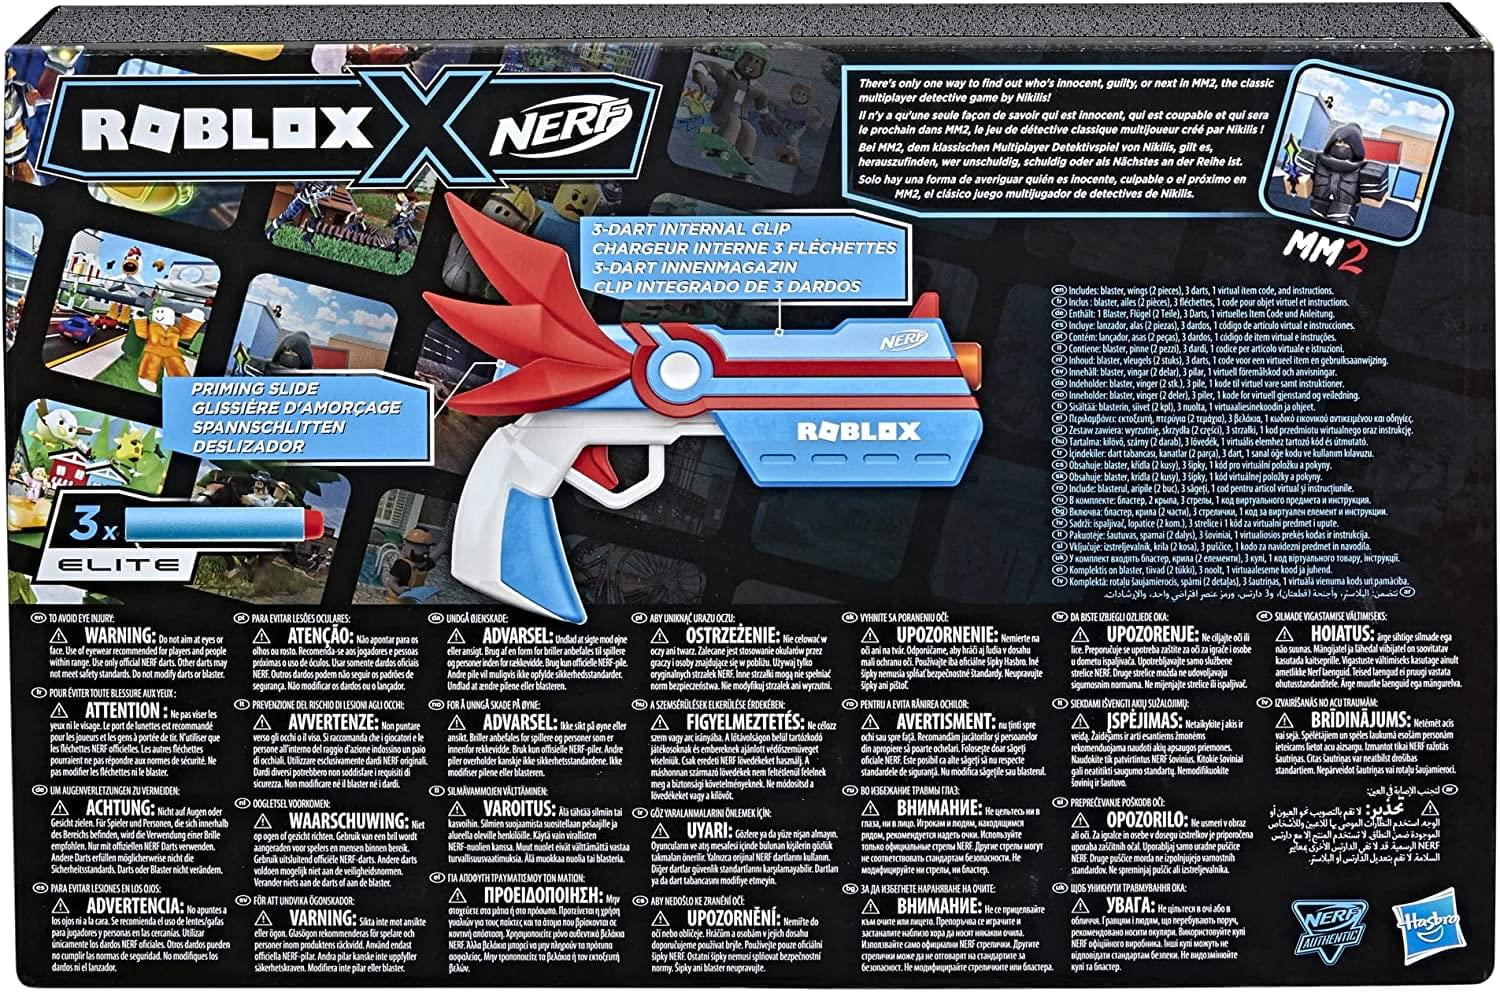 NERF Roblox MM2: Dart Blaster, Shark-Fin Priming, 3 Mega Dardos